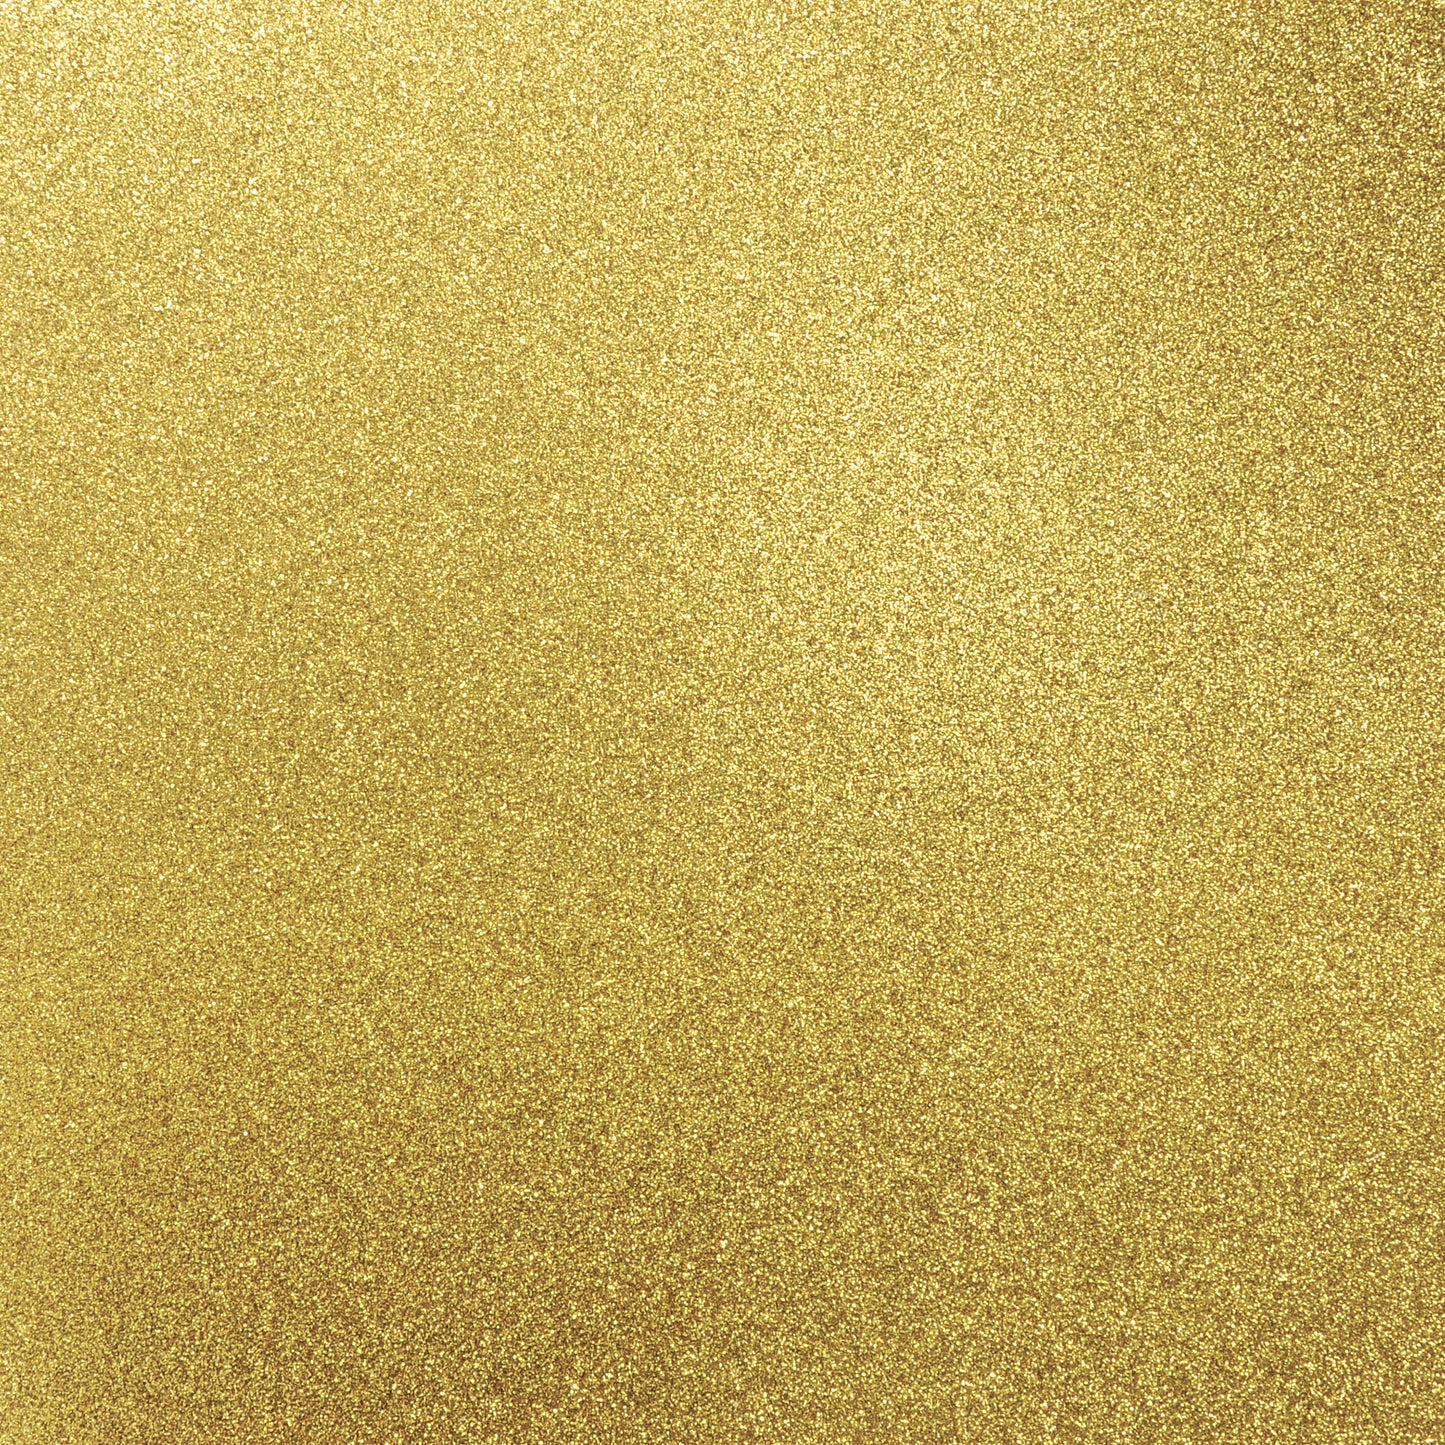 Glitter Cardstock - Golden